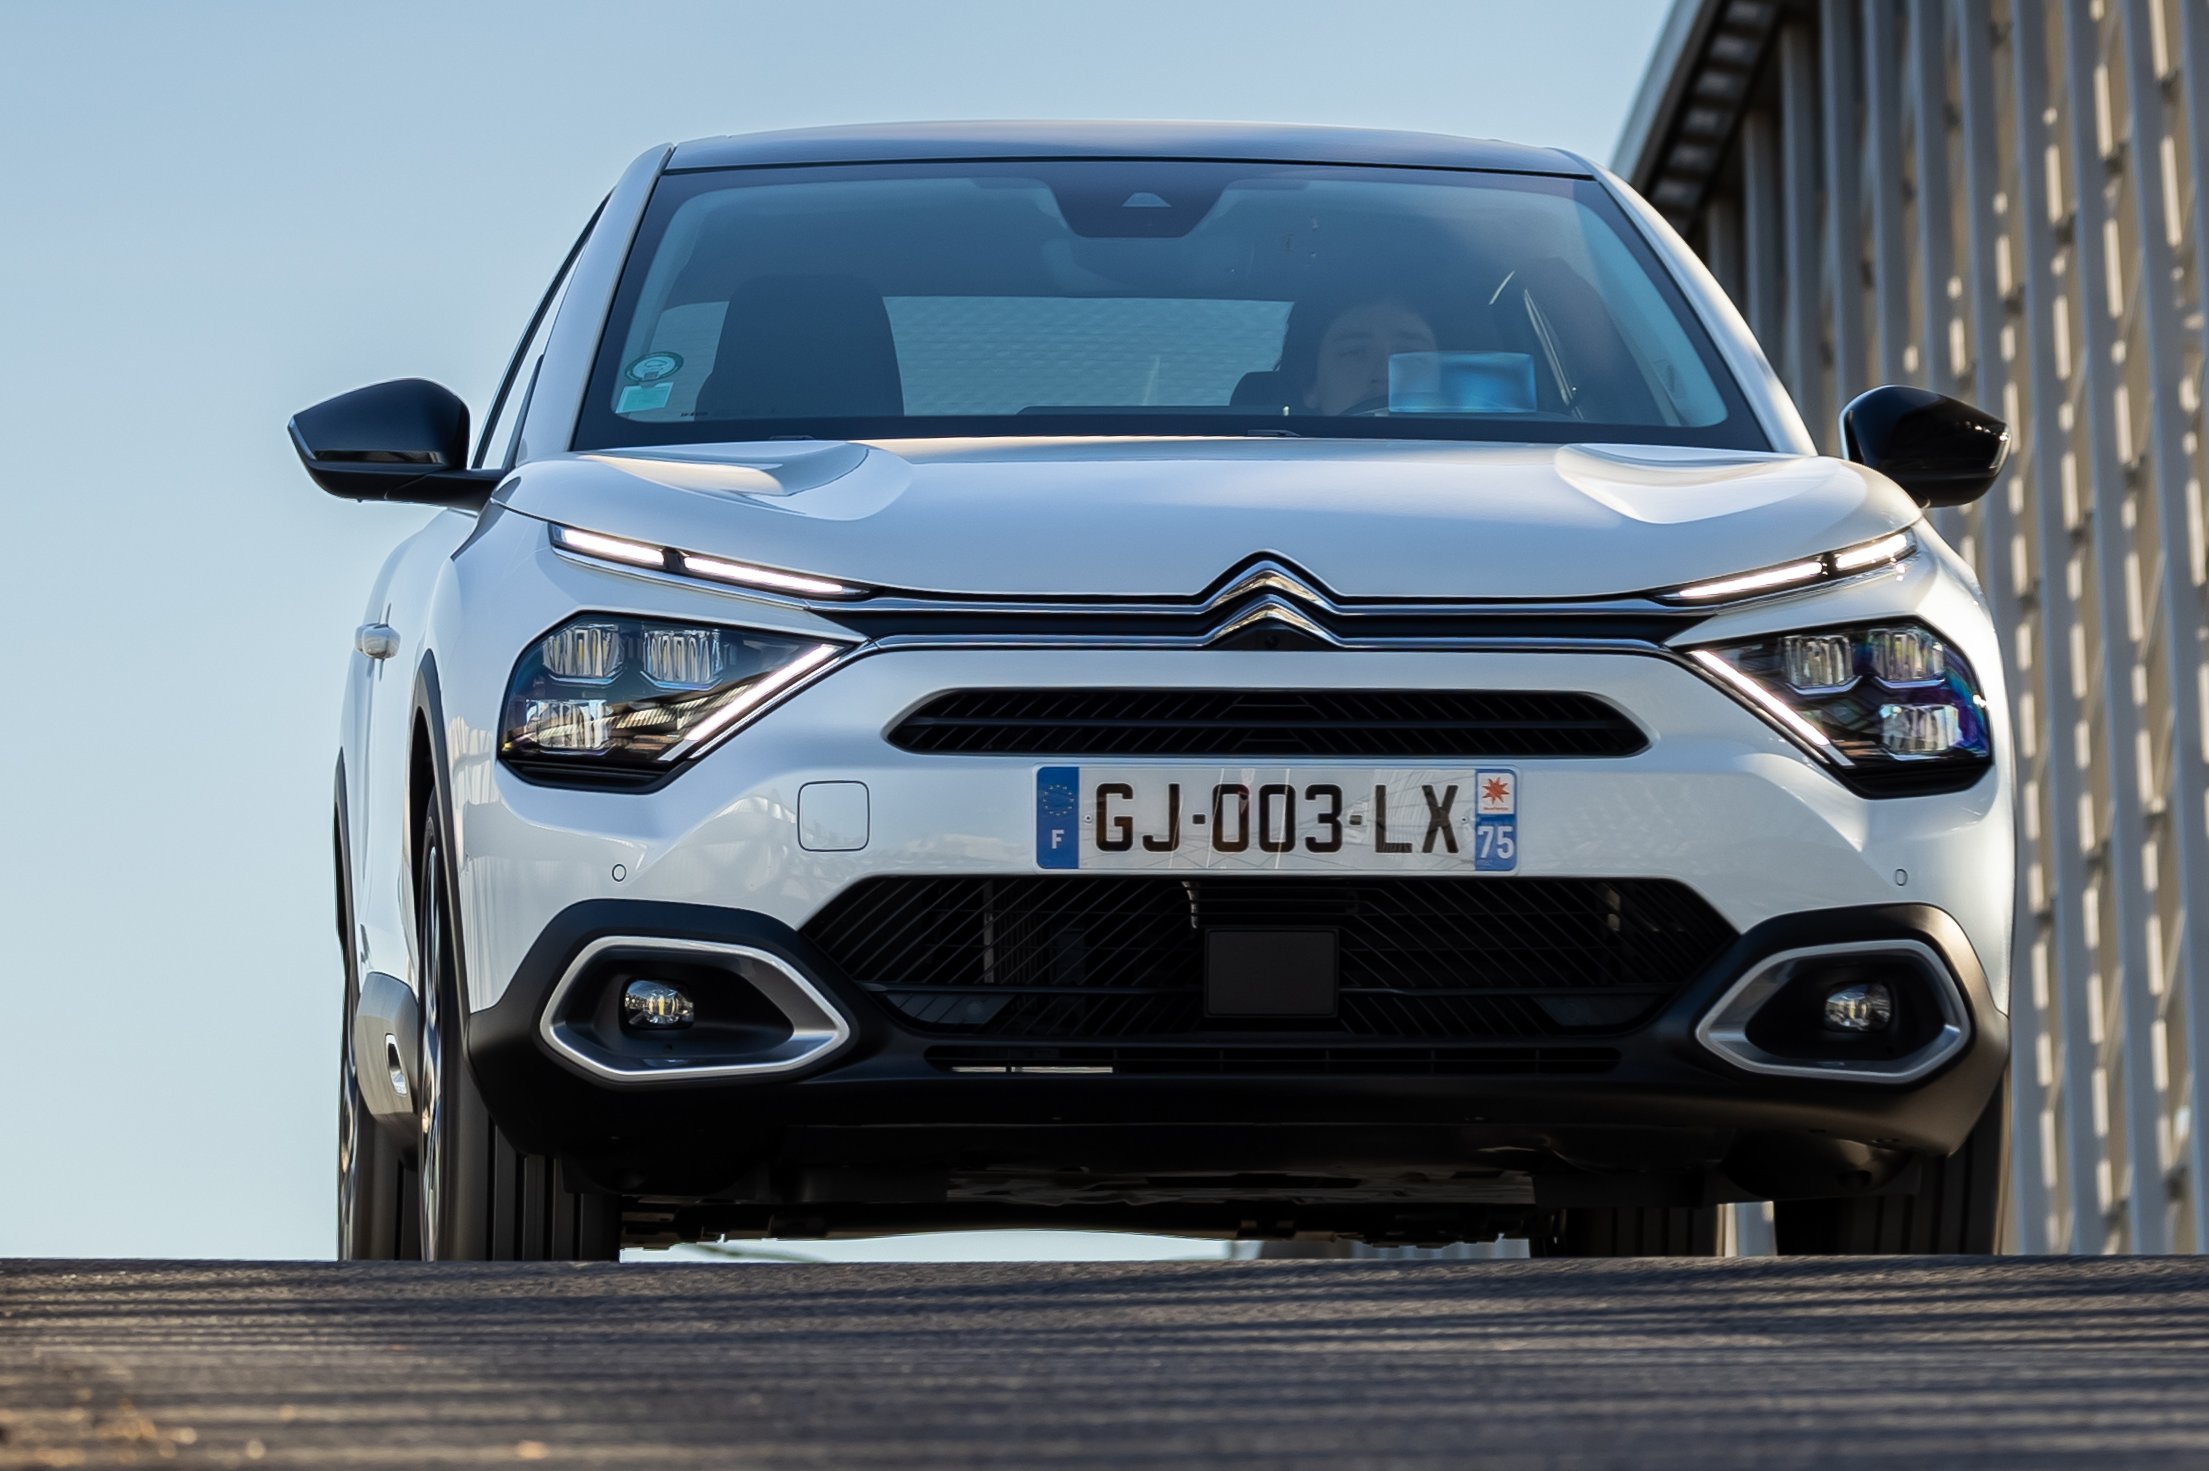 Megduplázza motorválasztékát a családi villany-Citroën 6